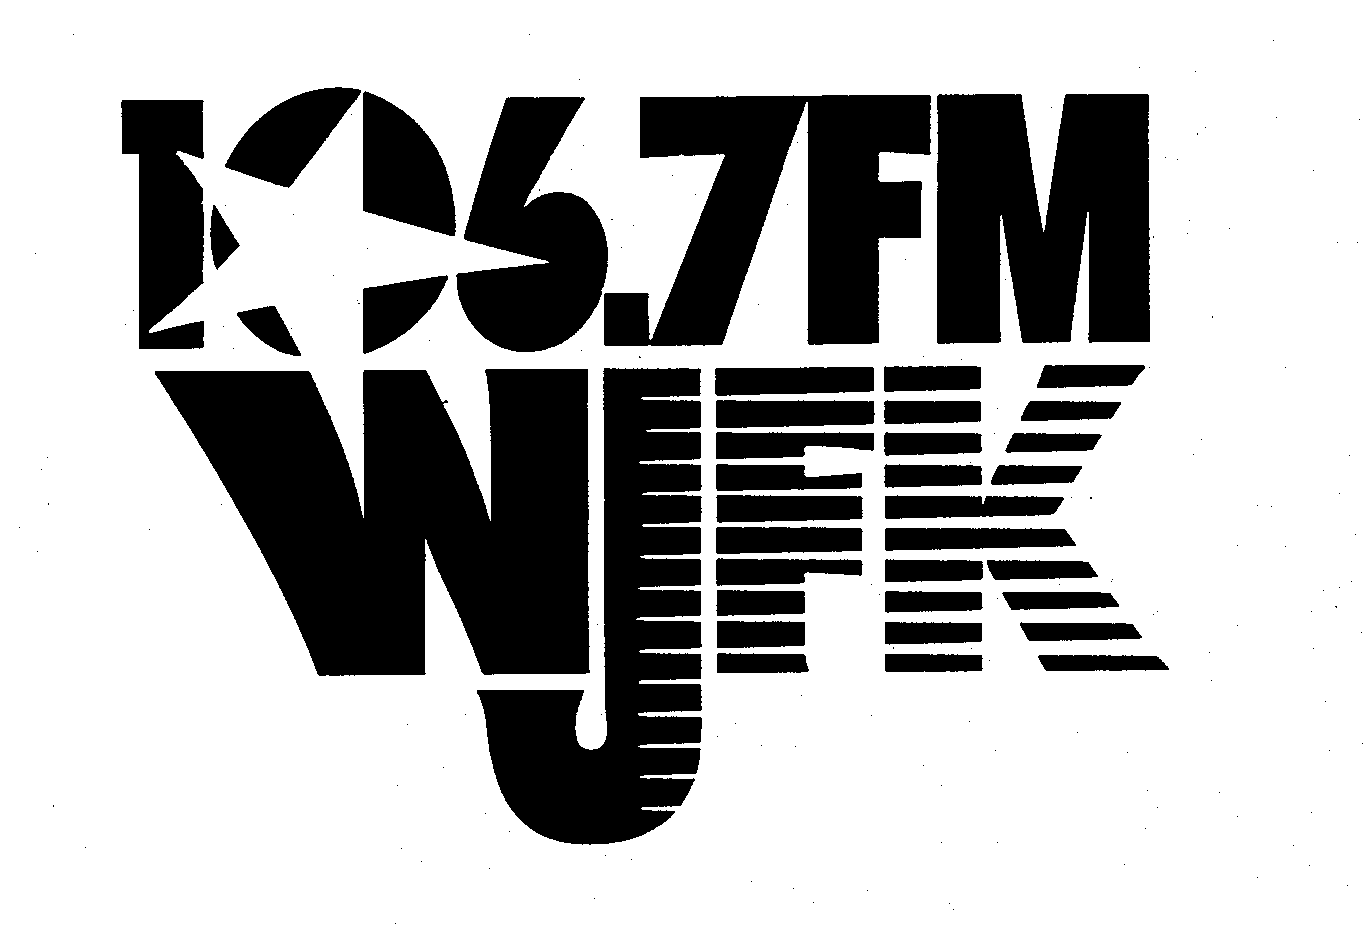  106.7FM WJFK